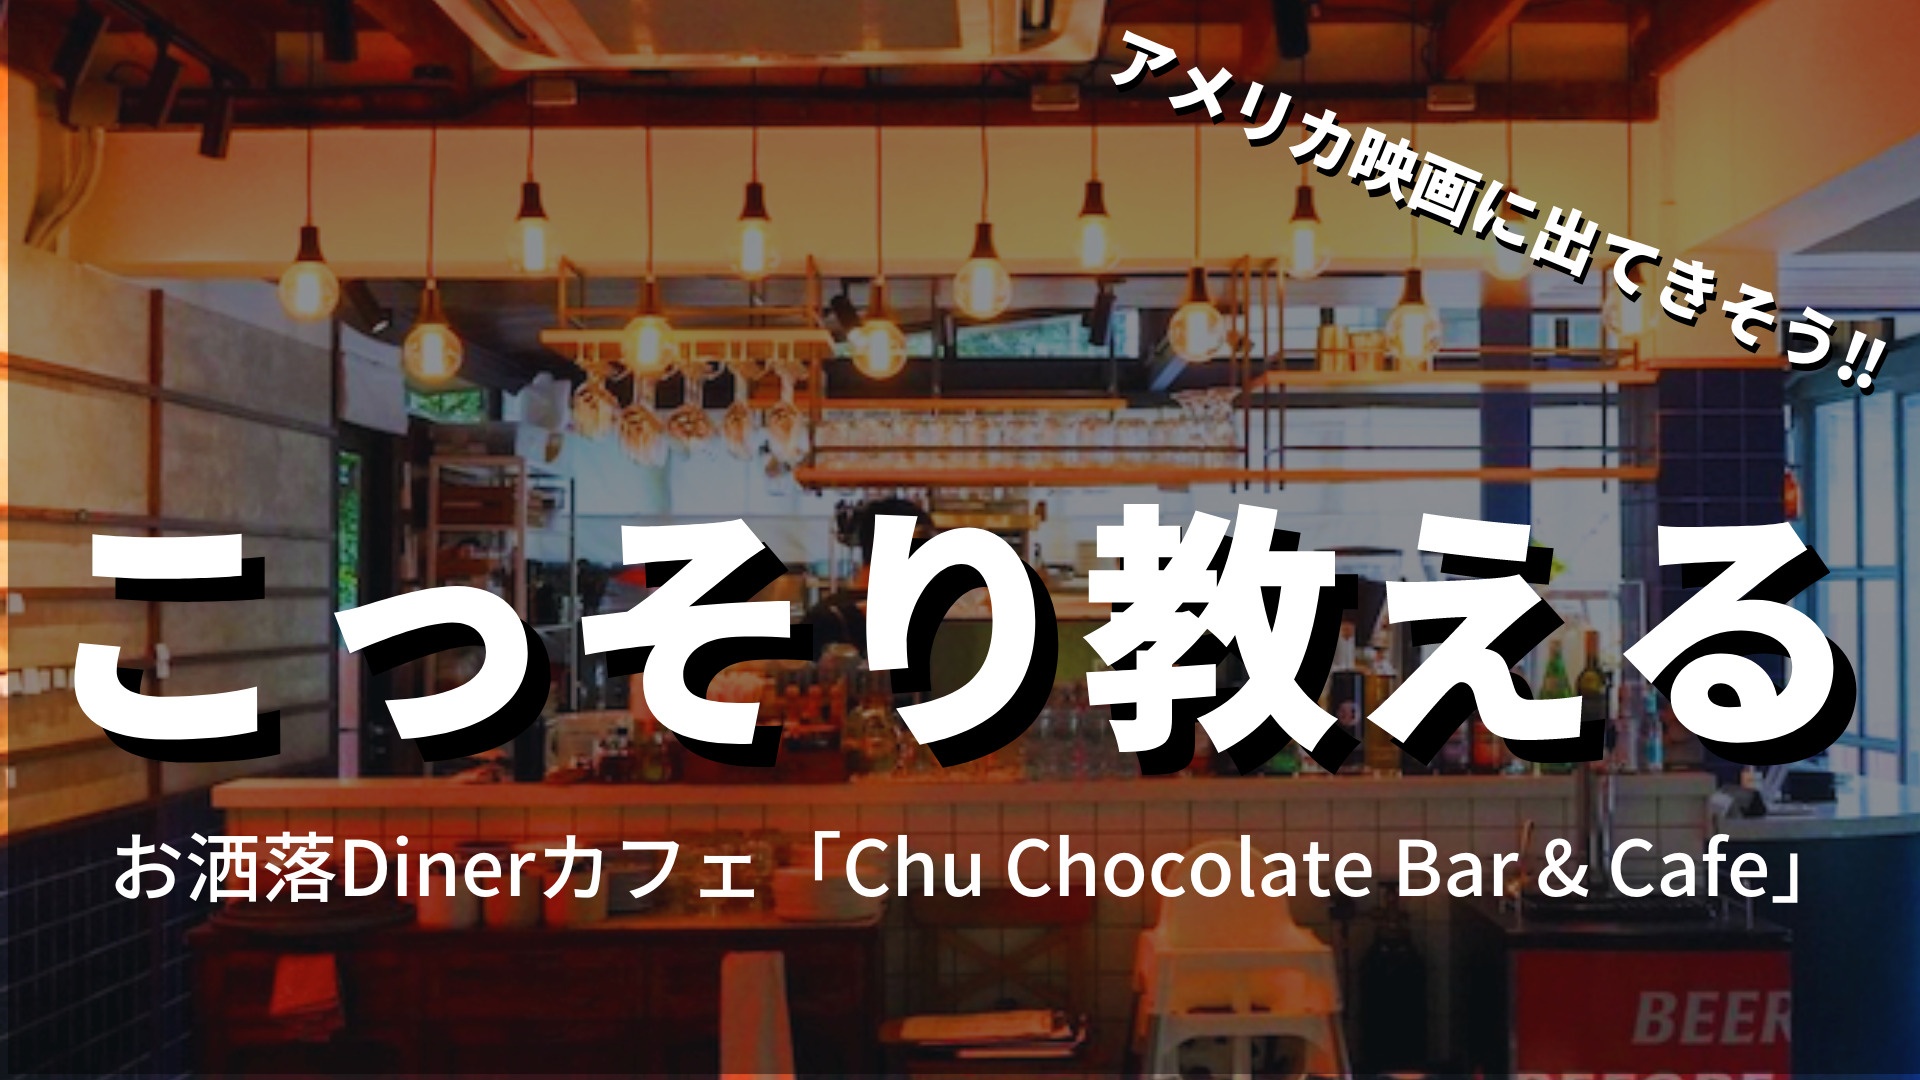 【プロンポン】こっそり教えるお洒落カフェ 「Chu Chocolate Bar & Cafe」のブラウニーアフォガードが絶品